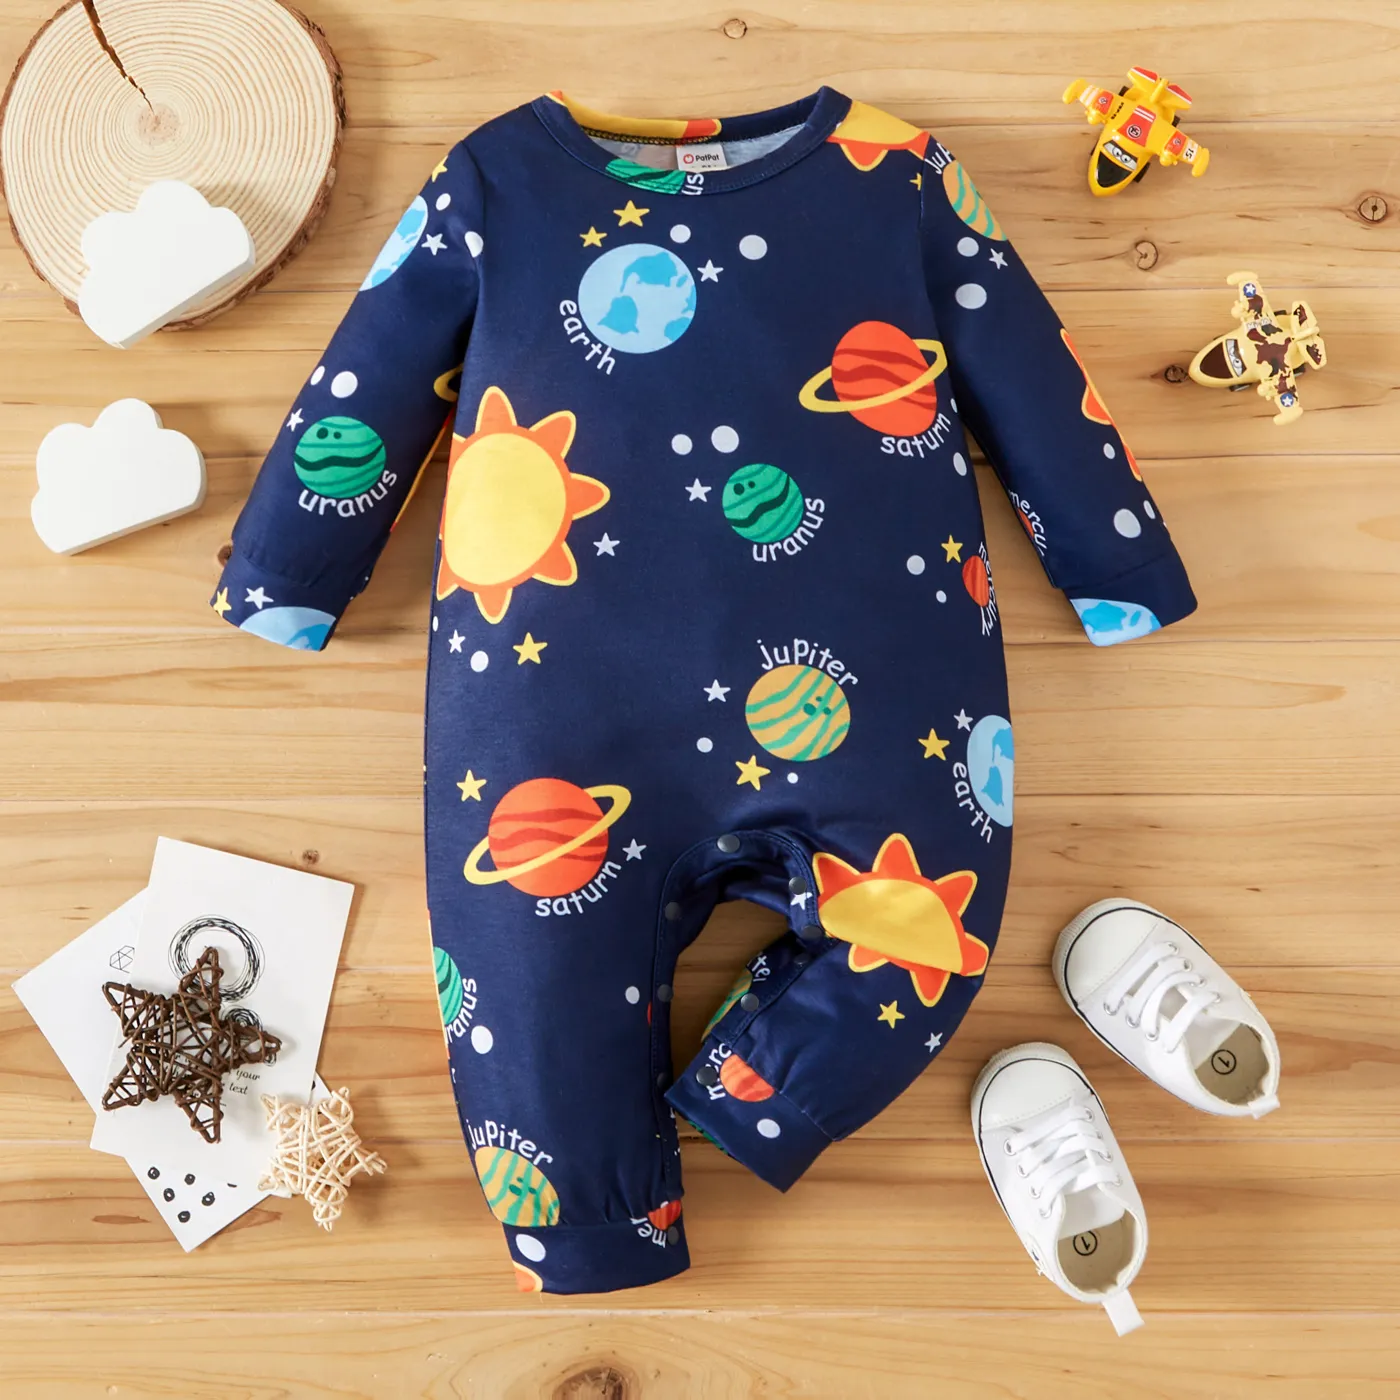 男嬰遍布太陽系行星和字母印花深藍色長袖連身衣